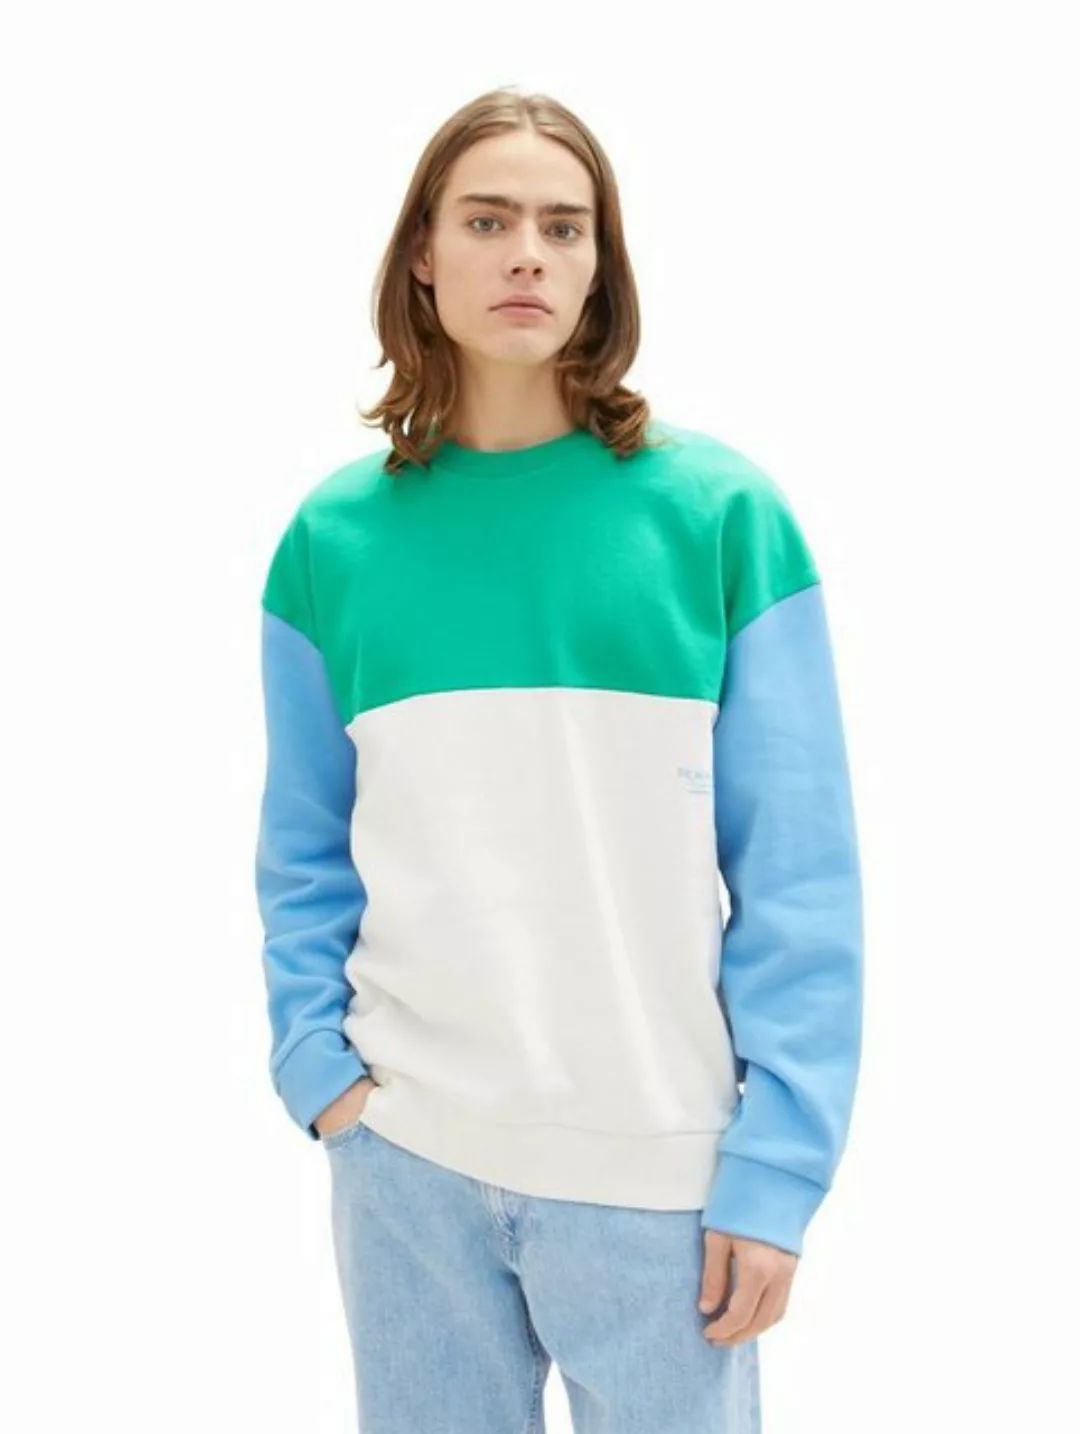 Tom Tailor Denim Herren Rundhals Sweatshirt COLORBLOCK - Relaxed Fit günstig online kaufen